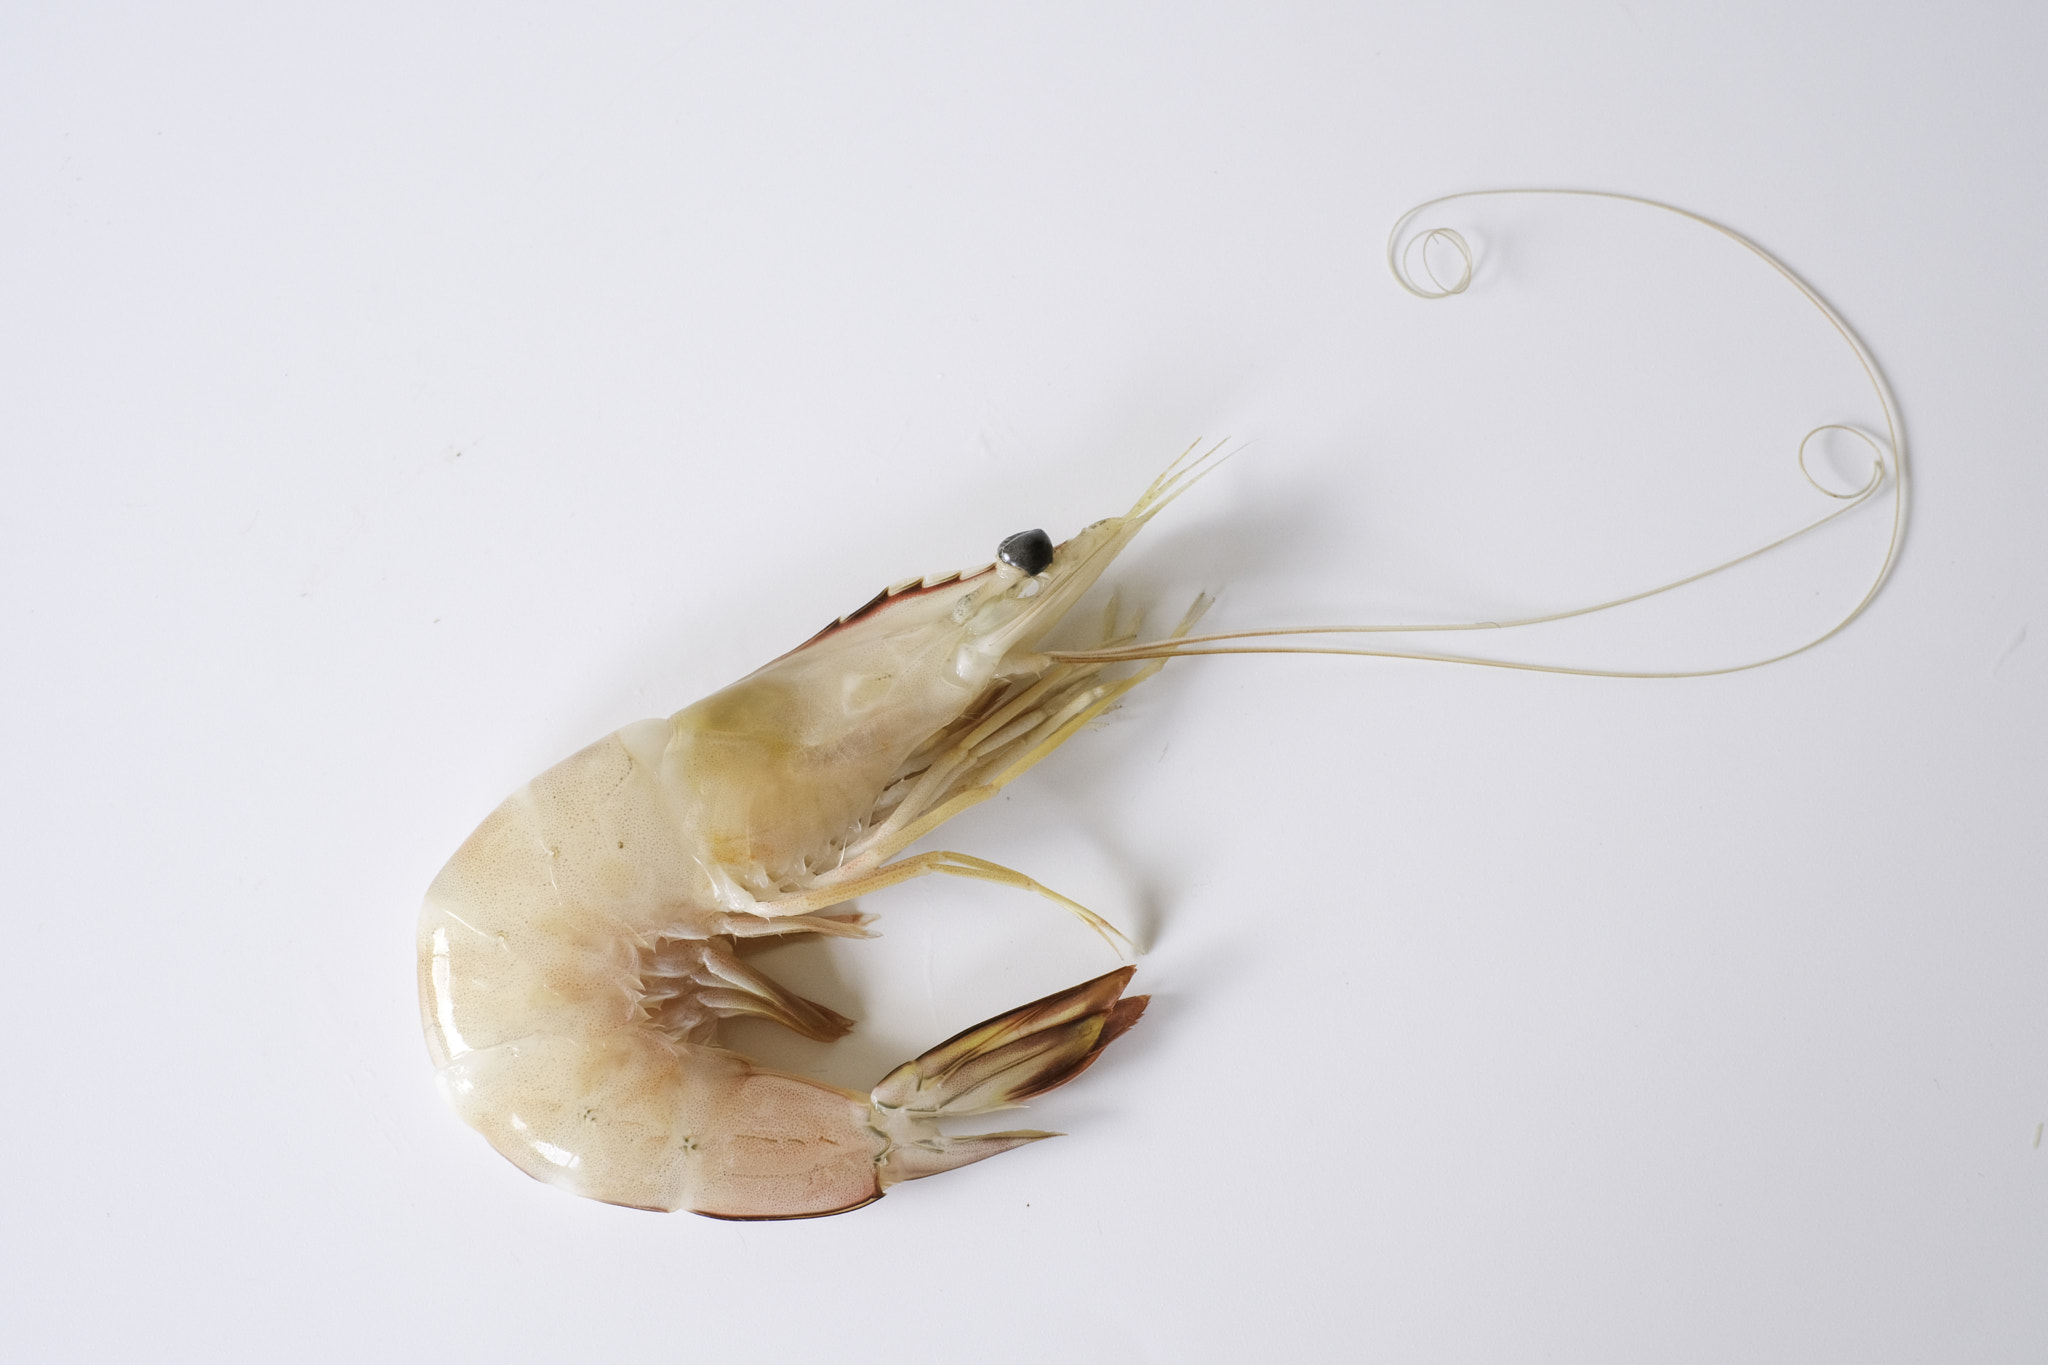 A whiteleg shrimp, Pacific white shrimp, King prawn, Penaeus vannamei isolated on white background.